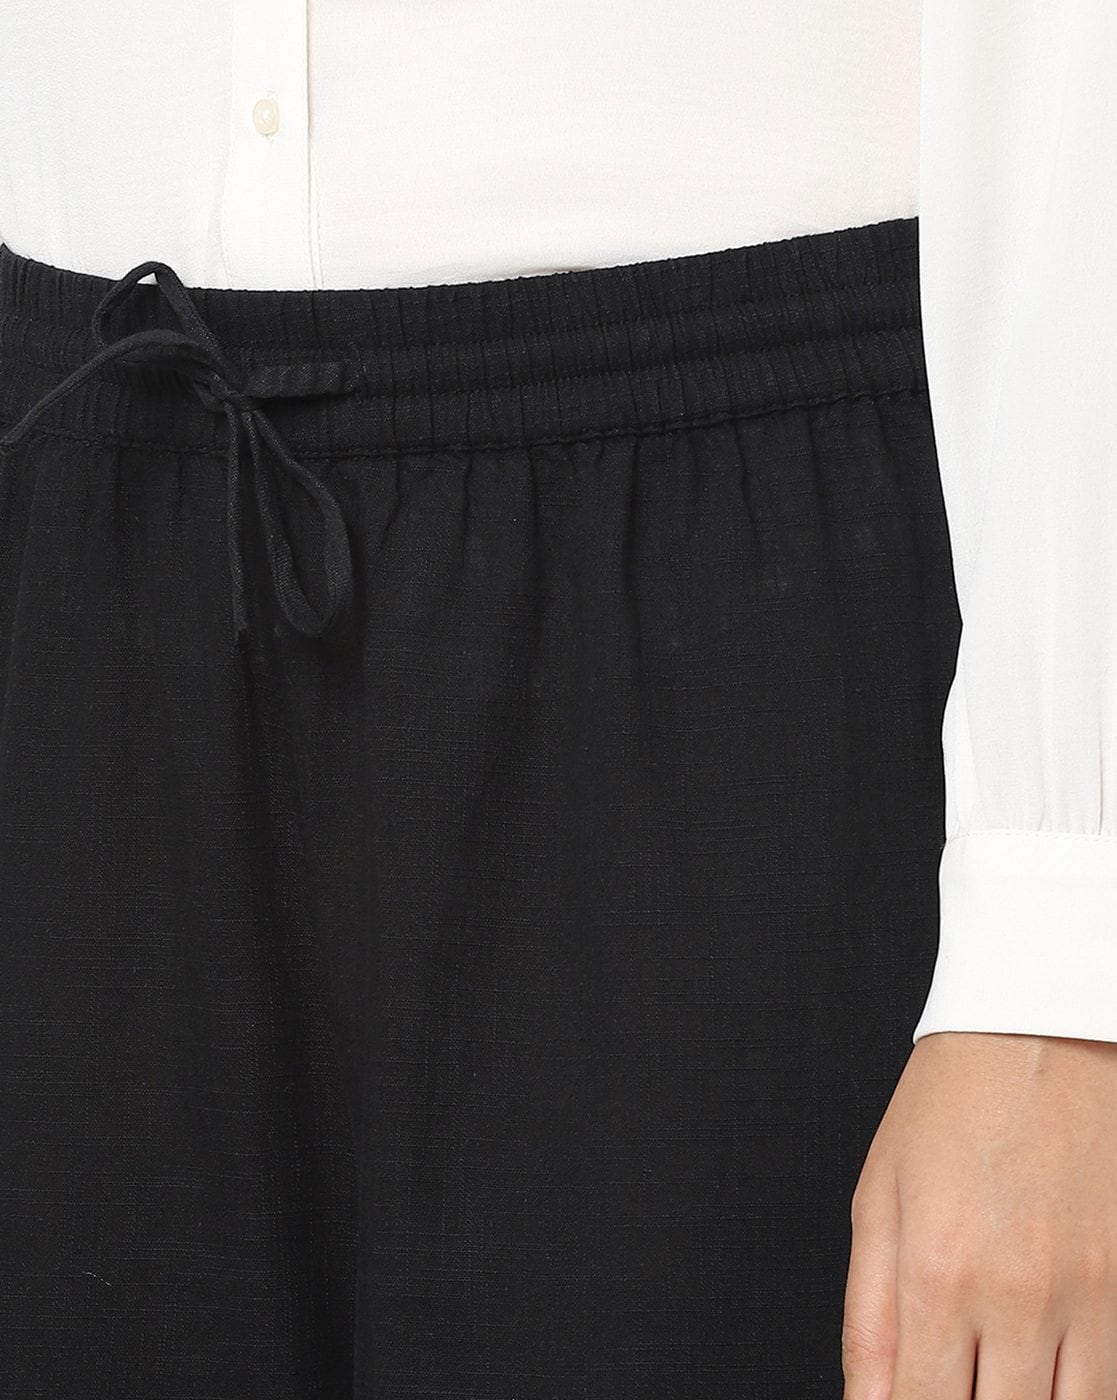 Ankle-length Pants - Black - Ladies | H&M US